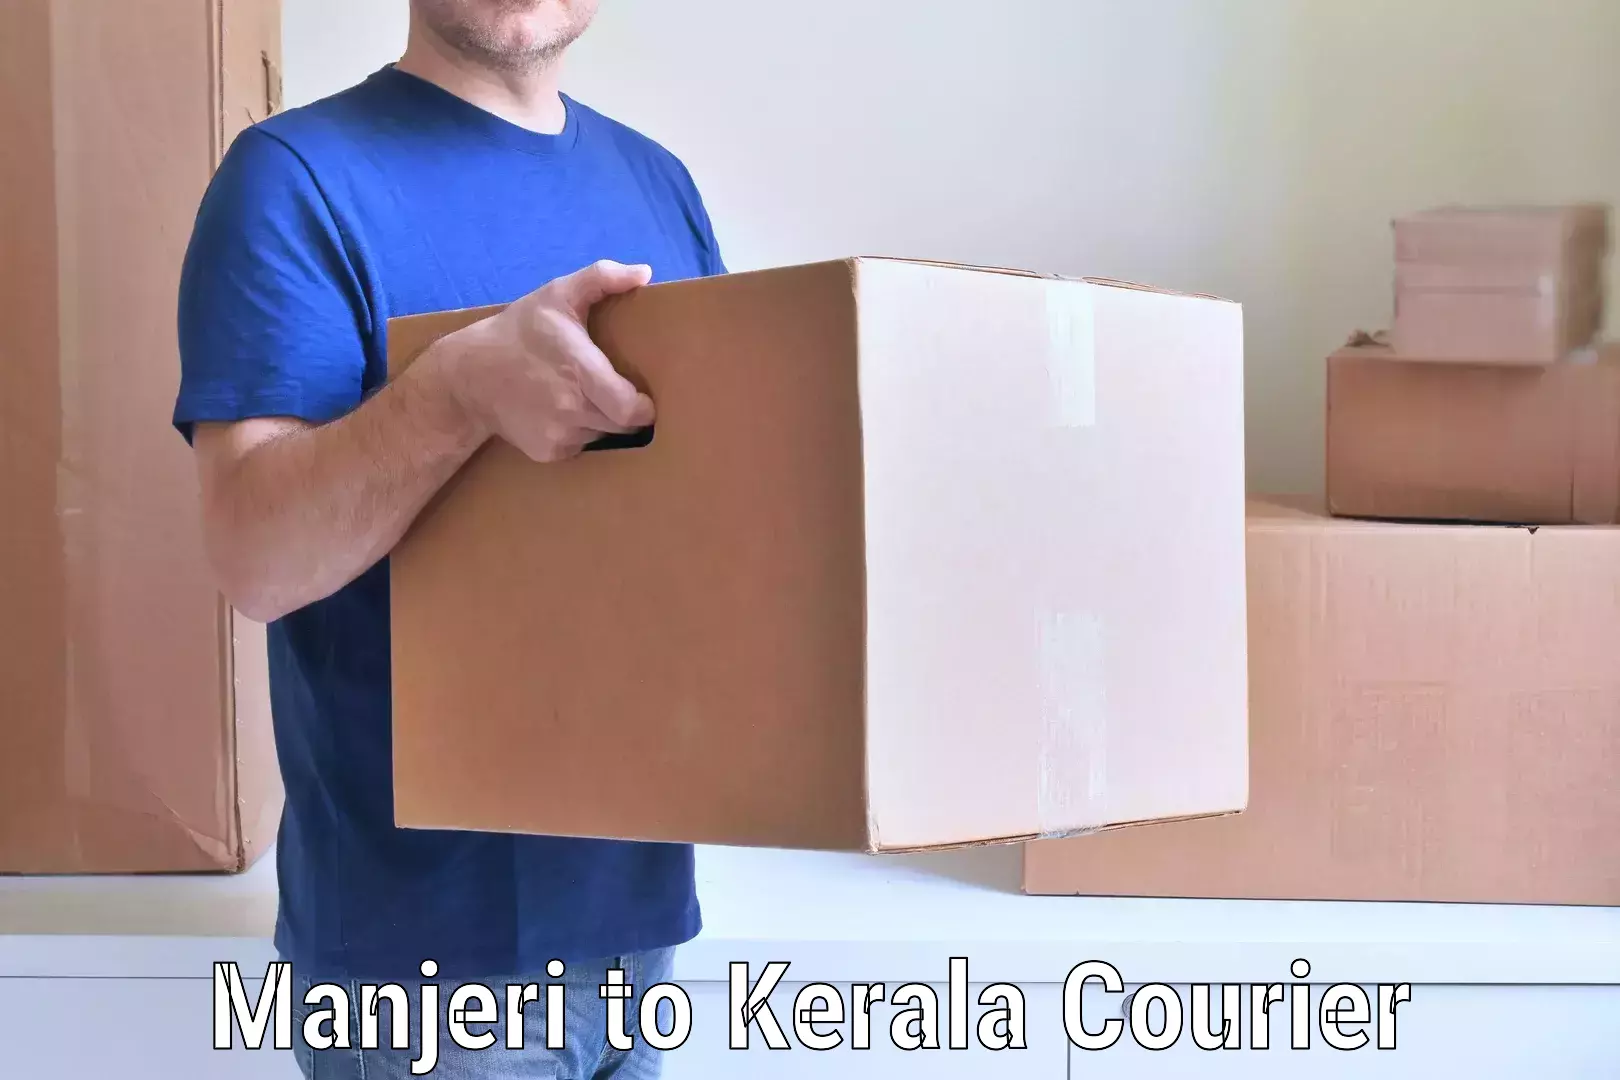 Efficient moving company Manjeri to Kerala